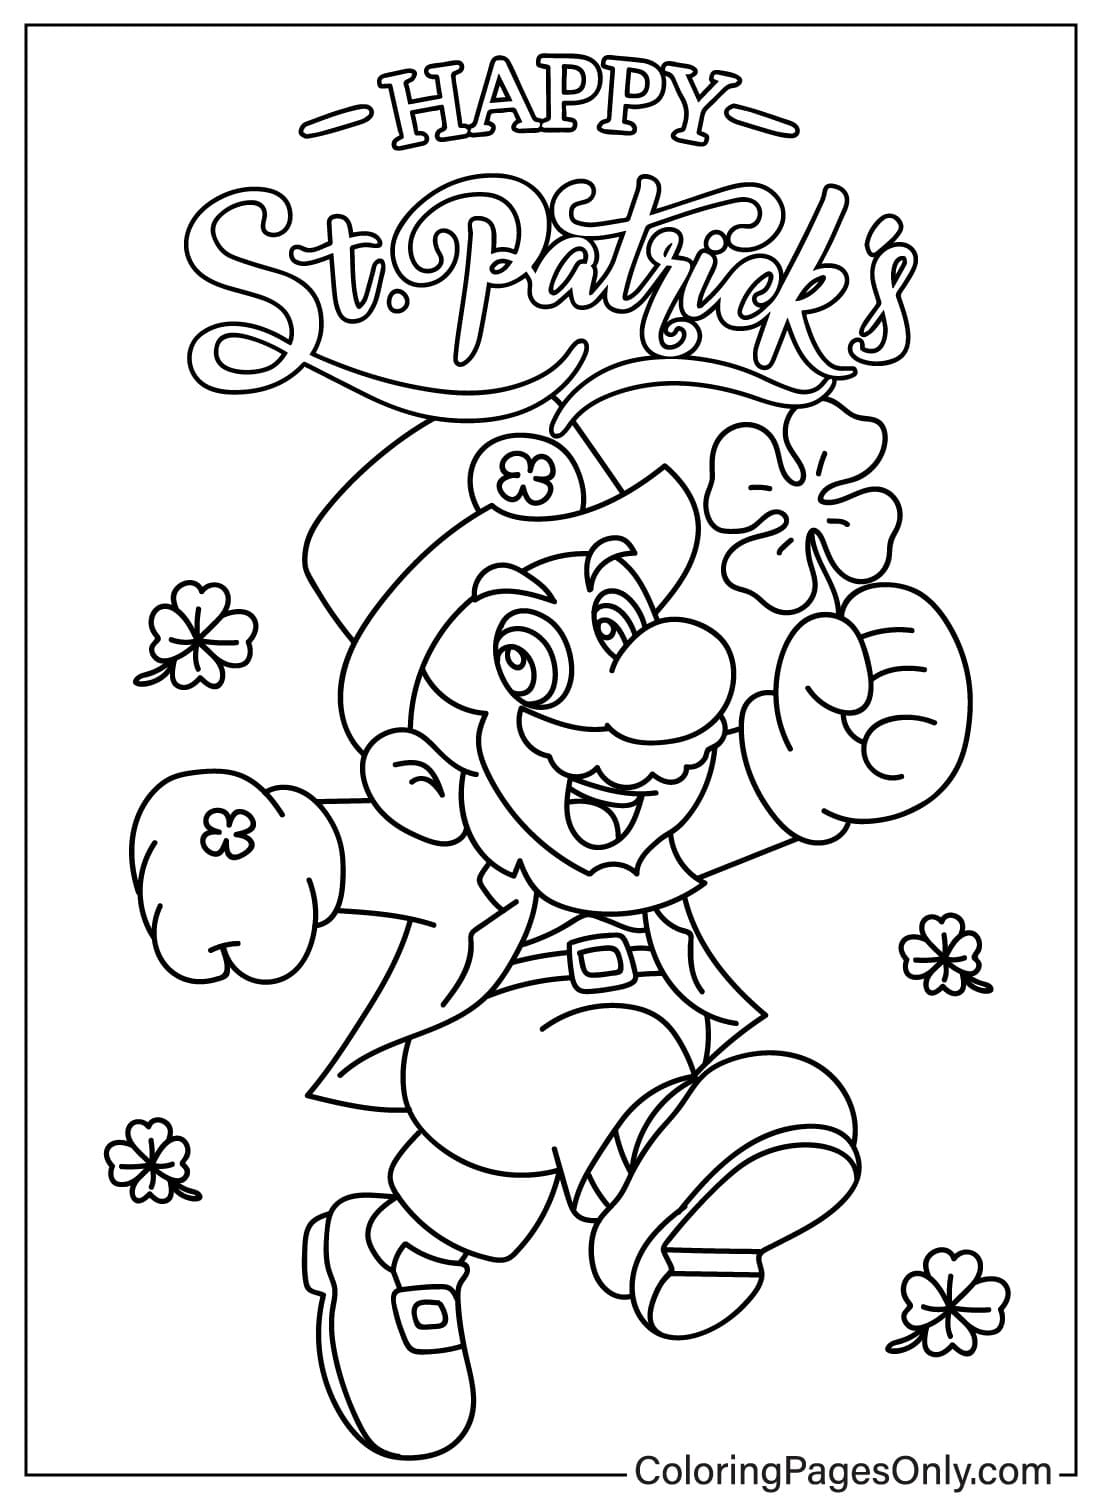 Mario Happy St. Patrick's Day da colorare pagina da Happy St. Patrick's Day